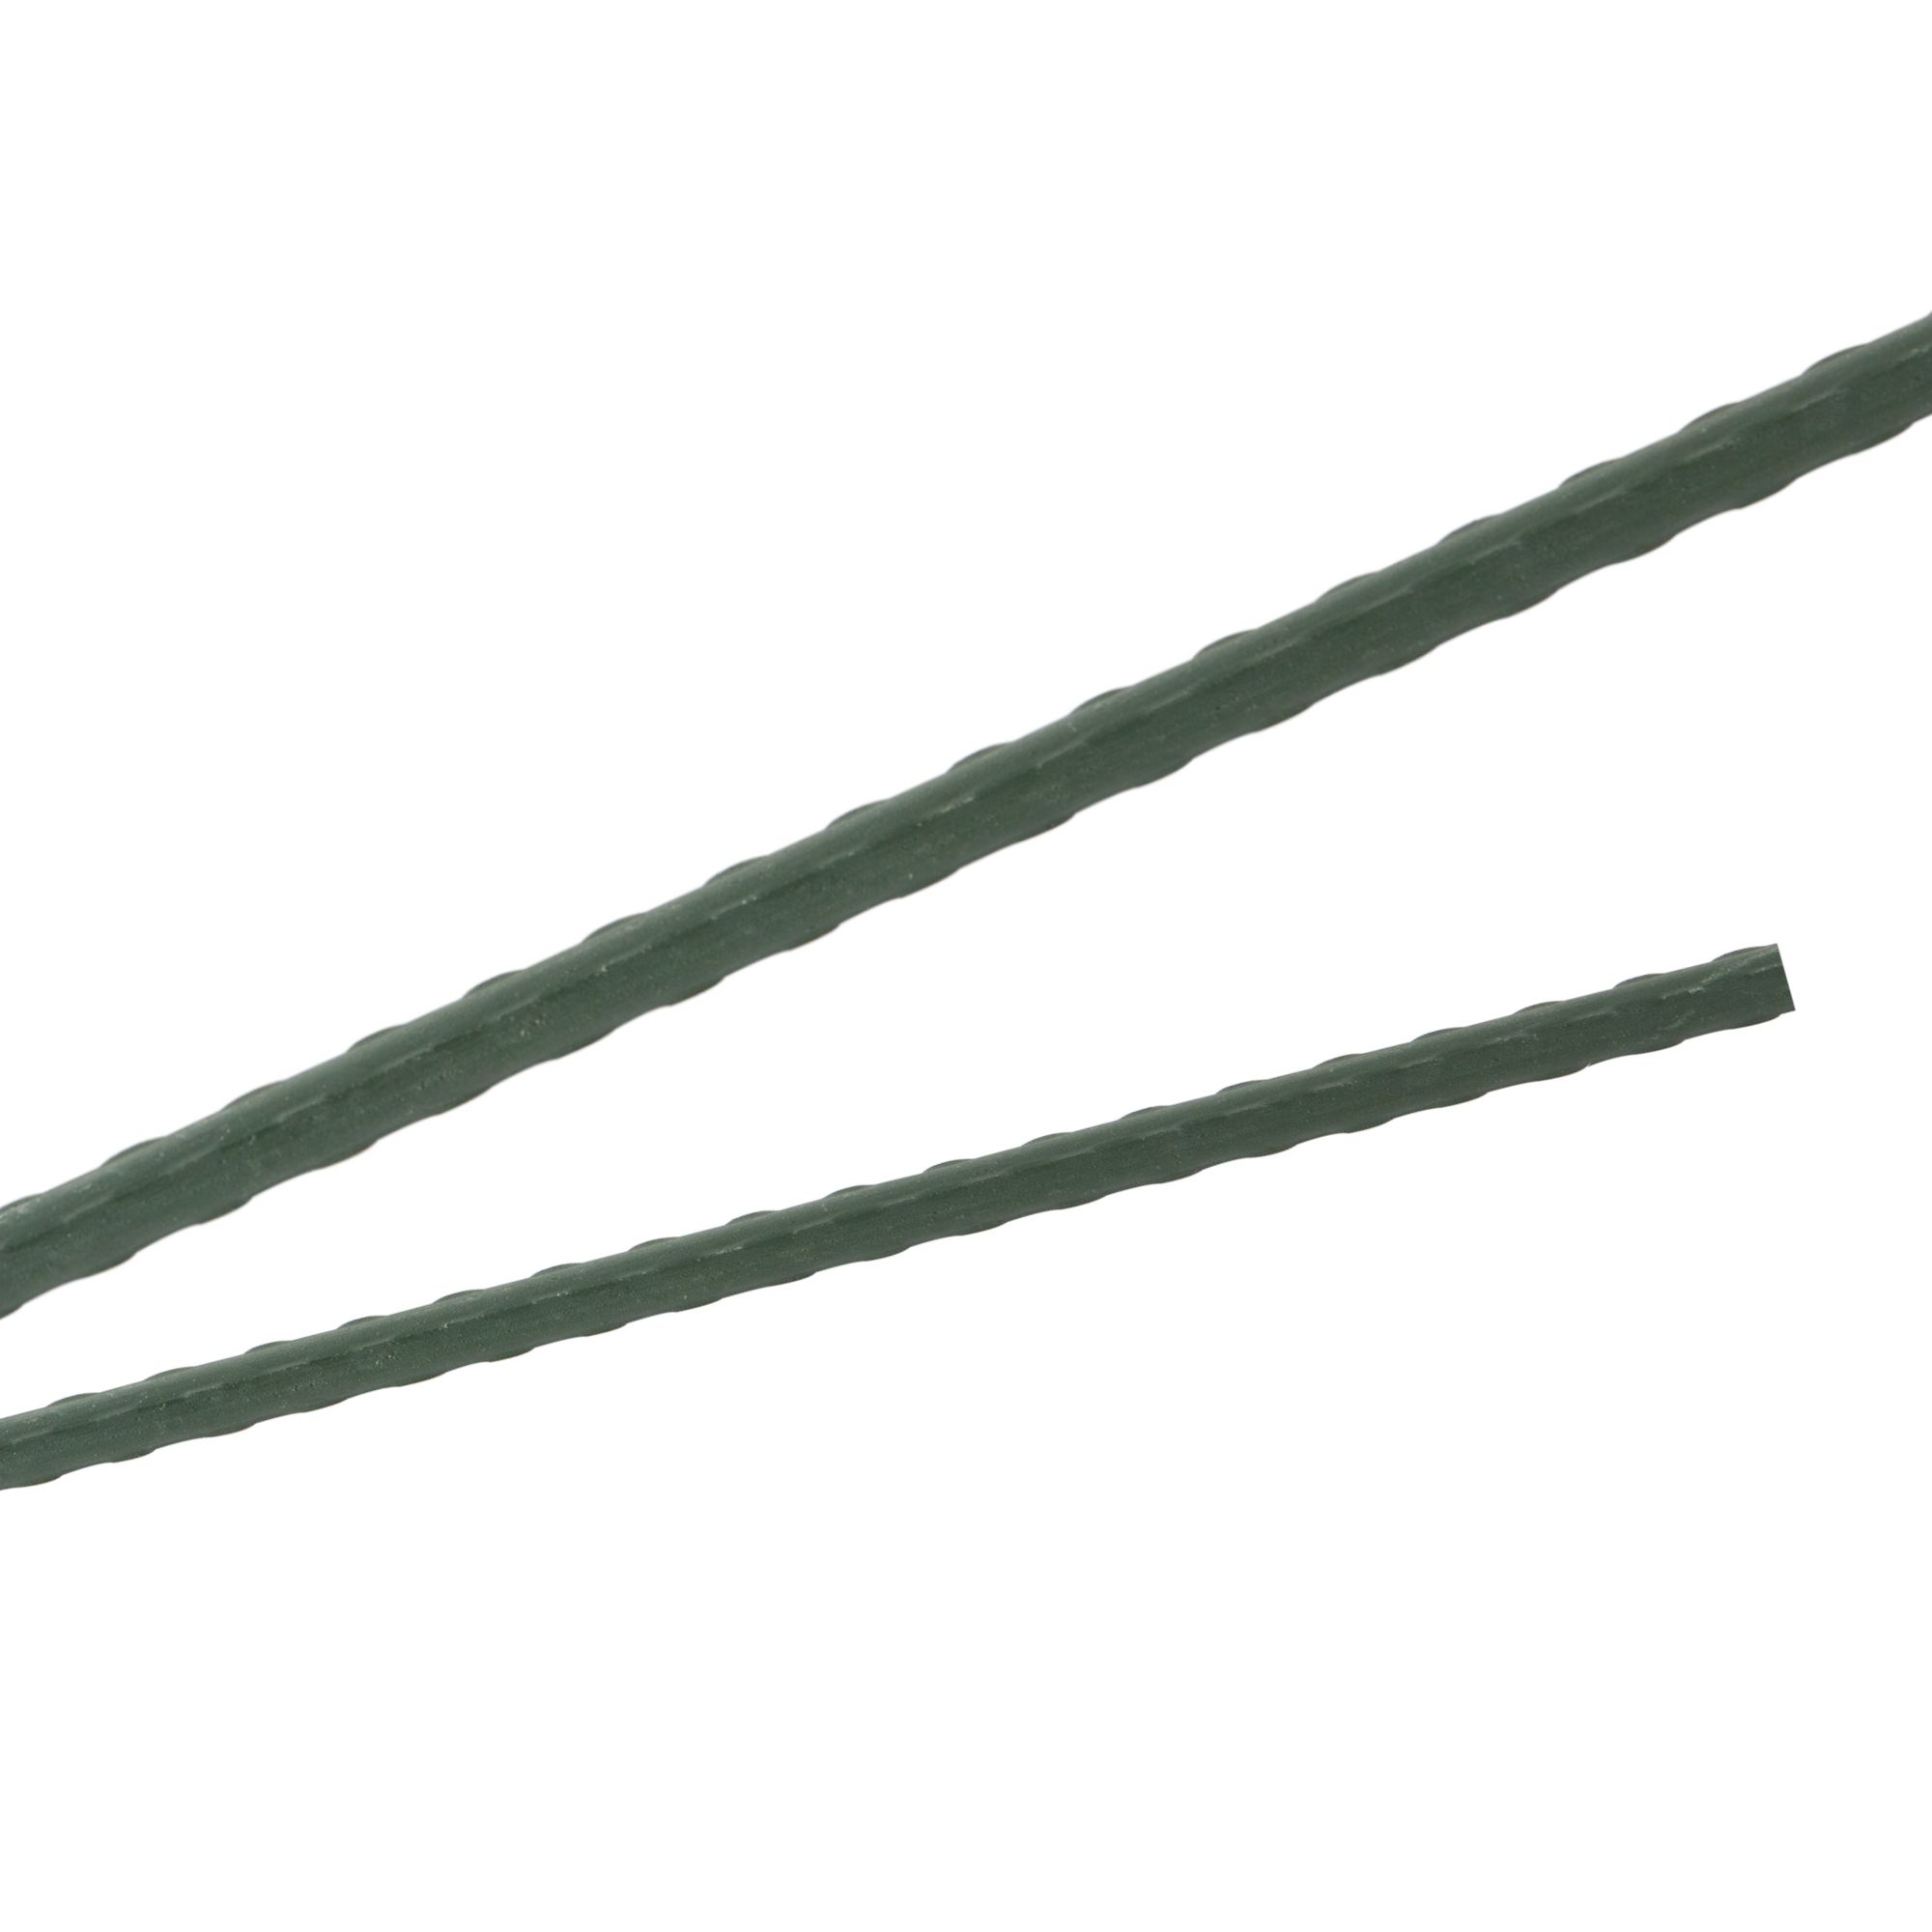 Tyč podpěrná, 11mm, 180cm, kov+PVC, zelená 0.139000 Kg GIGA Sklad20 45656 222